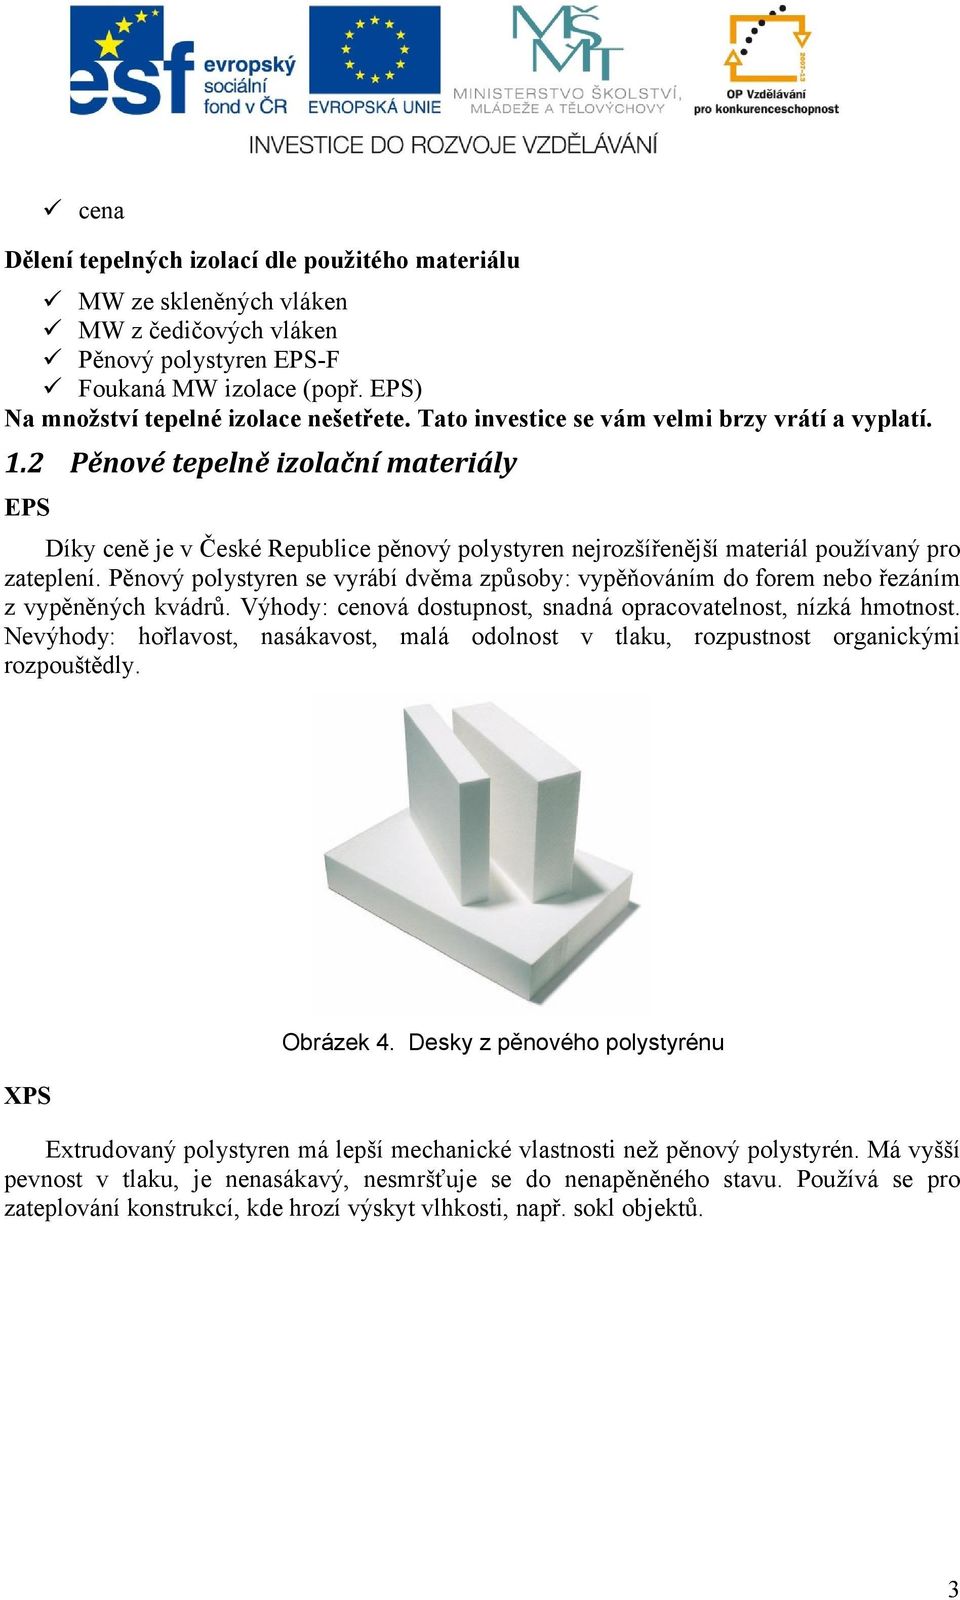 Pěnový polystyren se vyrábí dvěma způsoby: vypěňováním do forem nebo řezáním z vypěněných kvádrů. Výhody: cenová dostupnost, snadná opracovatelnost, nízká hmotnost.